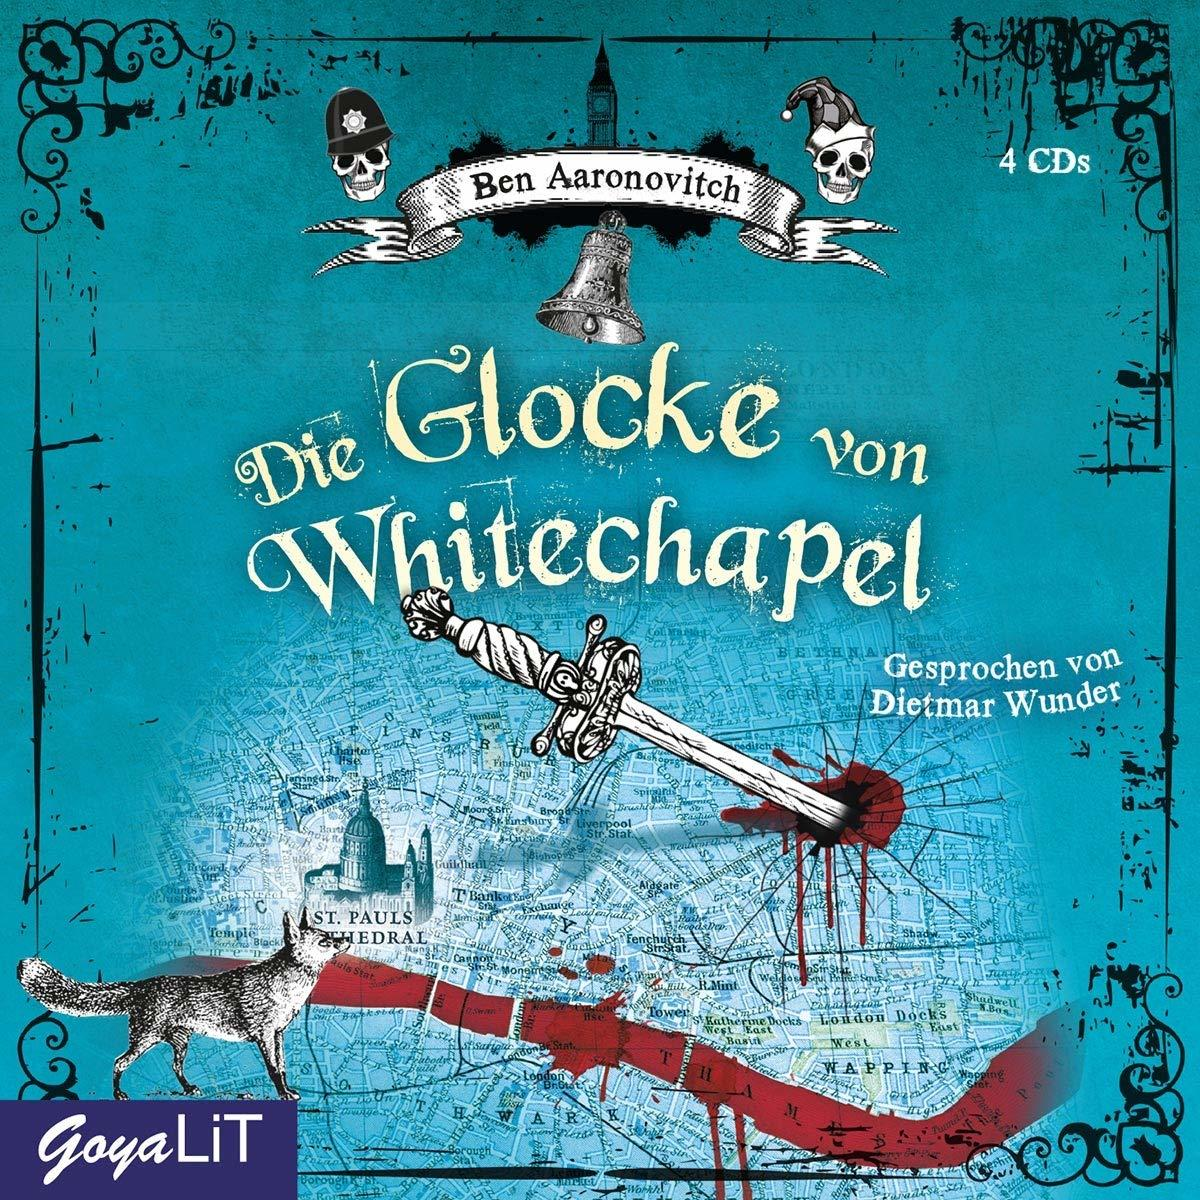 Ben Aaronovitch Von Whitechapel - Glocke (CD) - Die